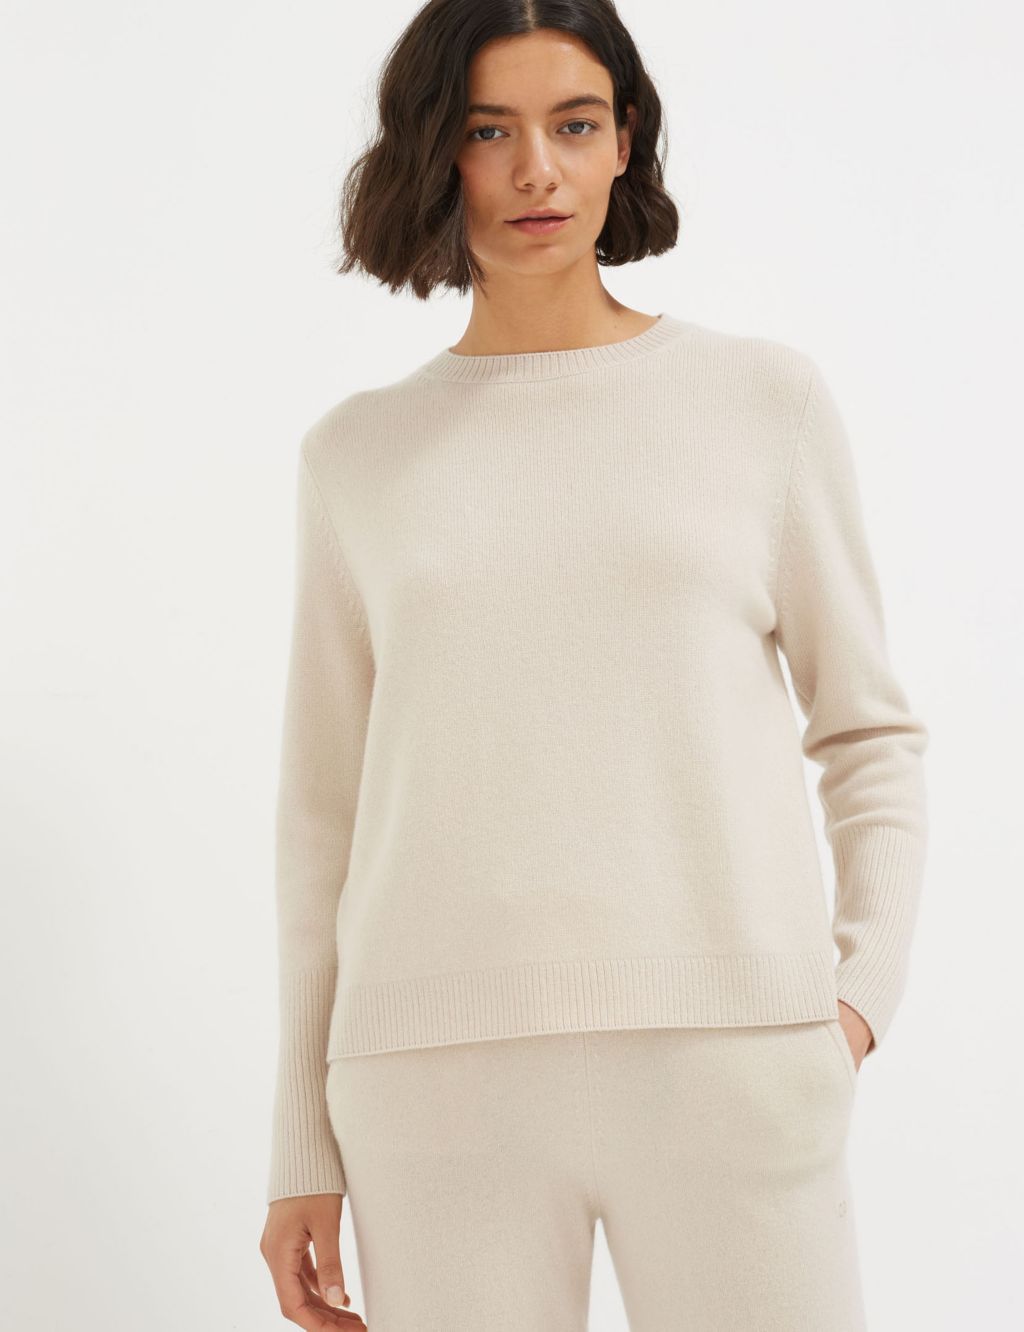 Women’s Cashmere Knitwear |M&S | M&S